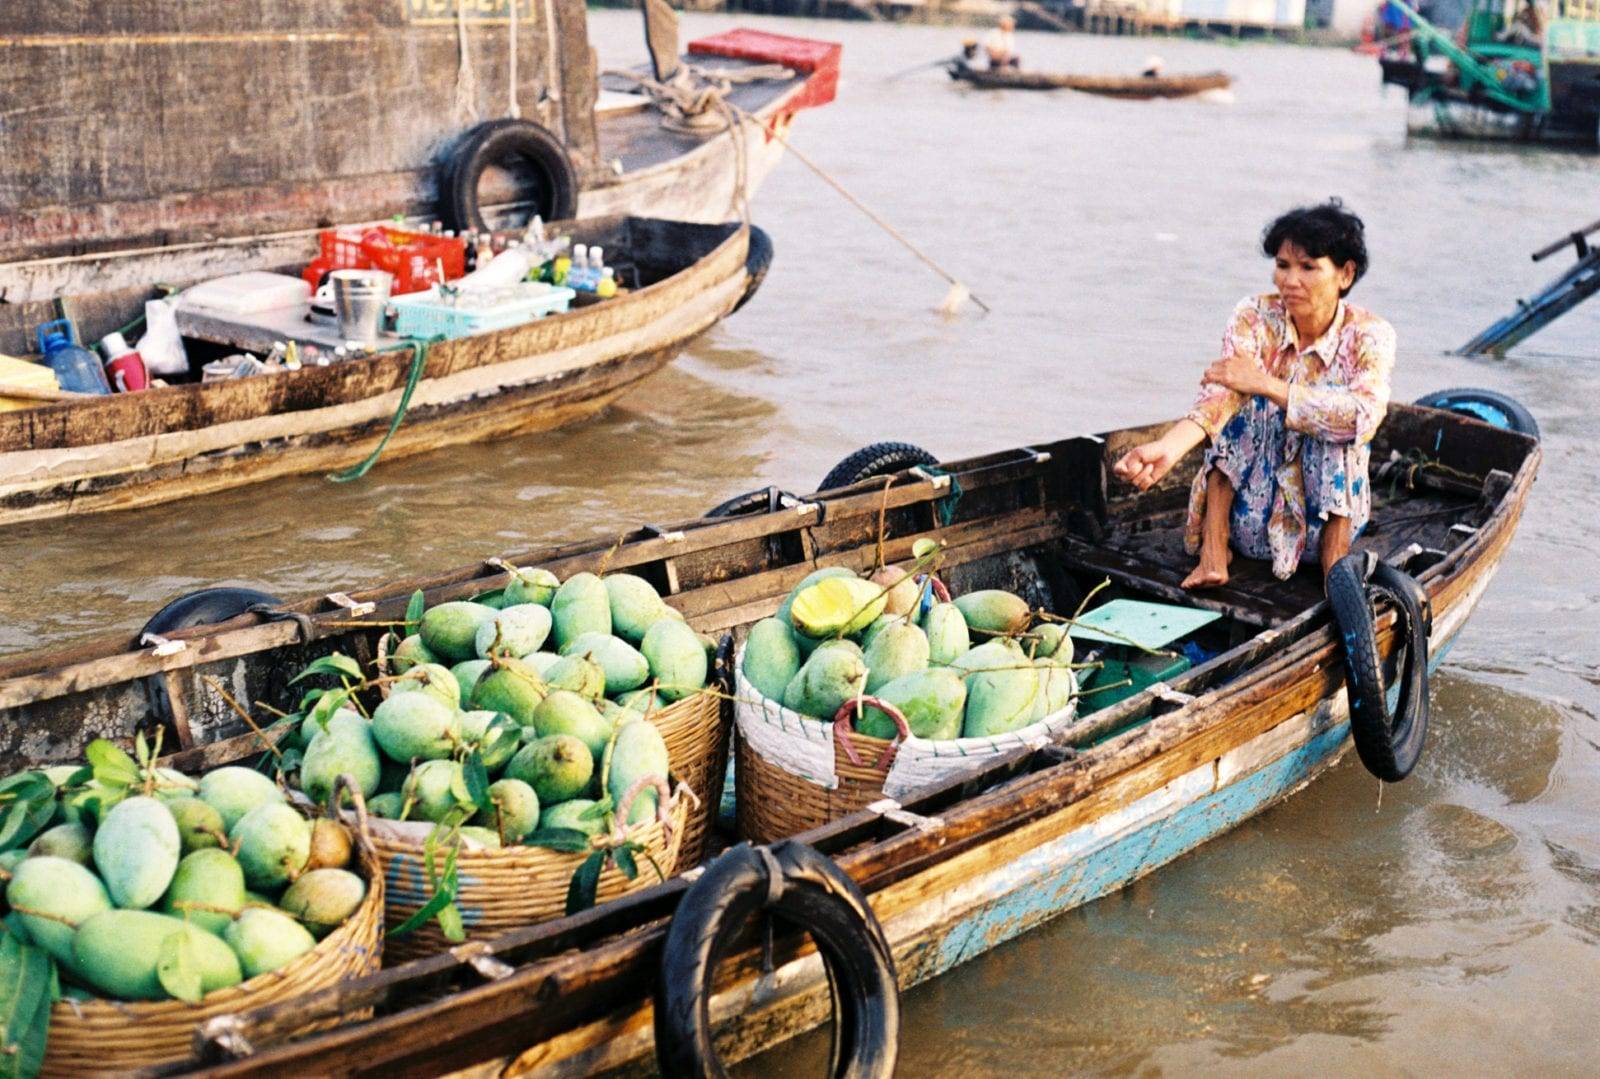 Топ-10 райских островов во вьетнаме, которые вы должны посетить! - вьетнам сегодня